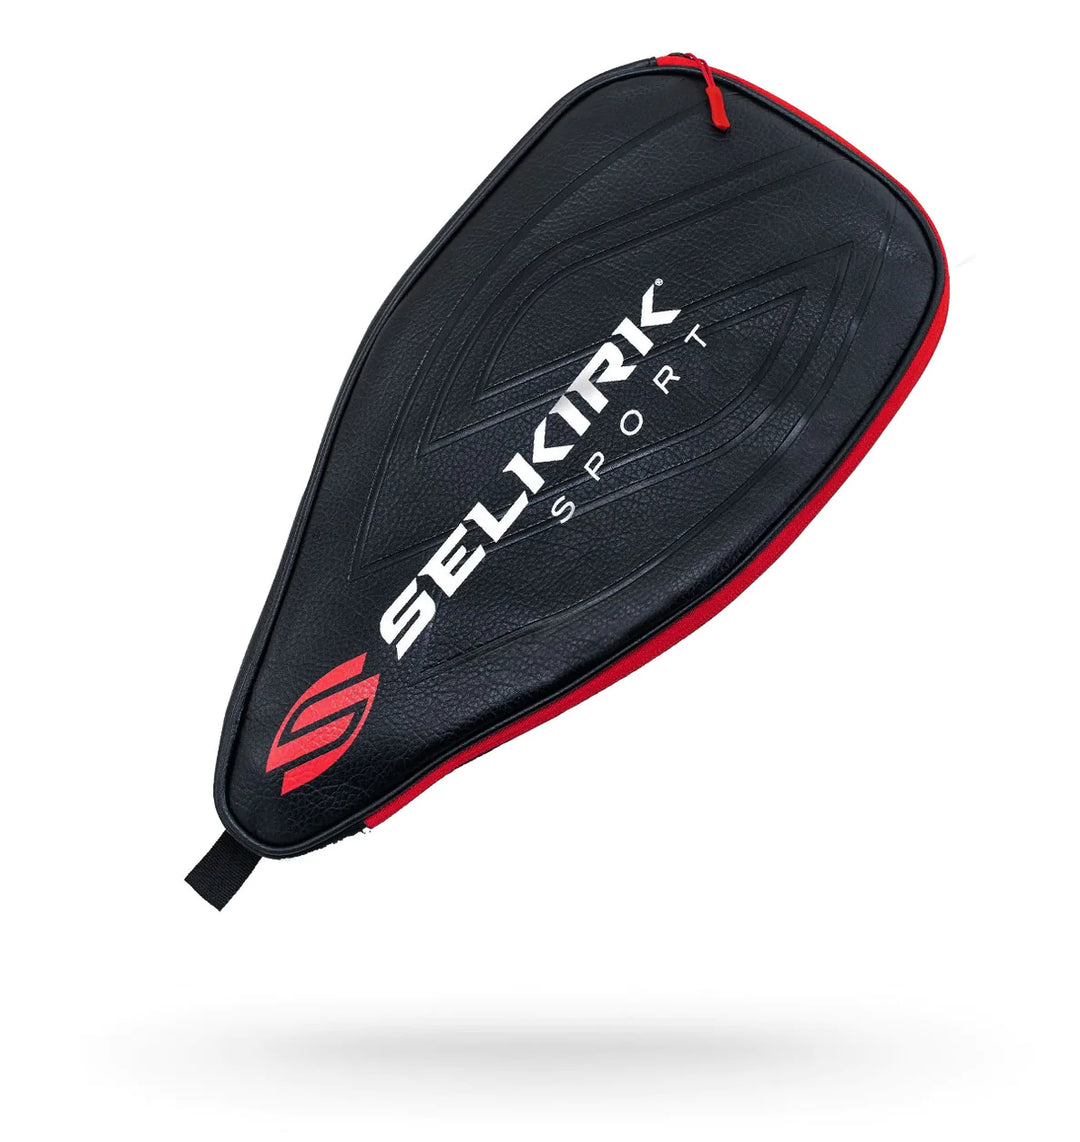 Selkirk Premium Paddle Bag